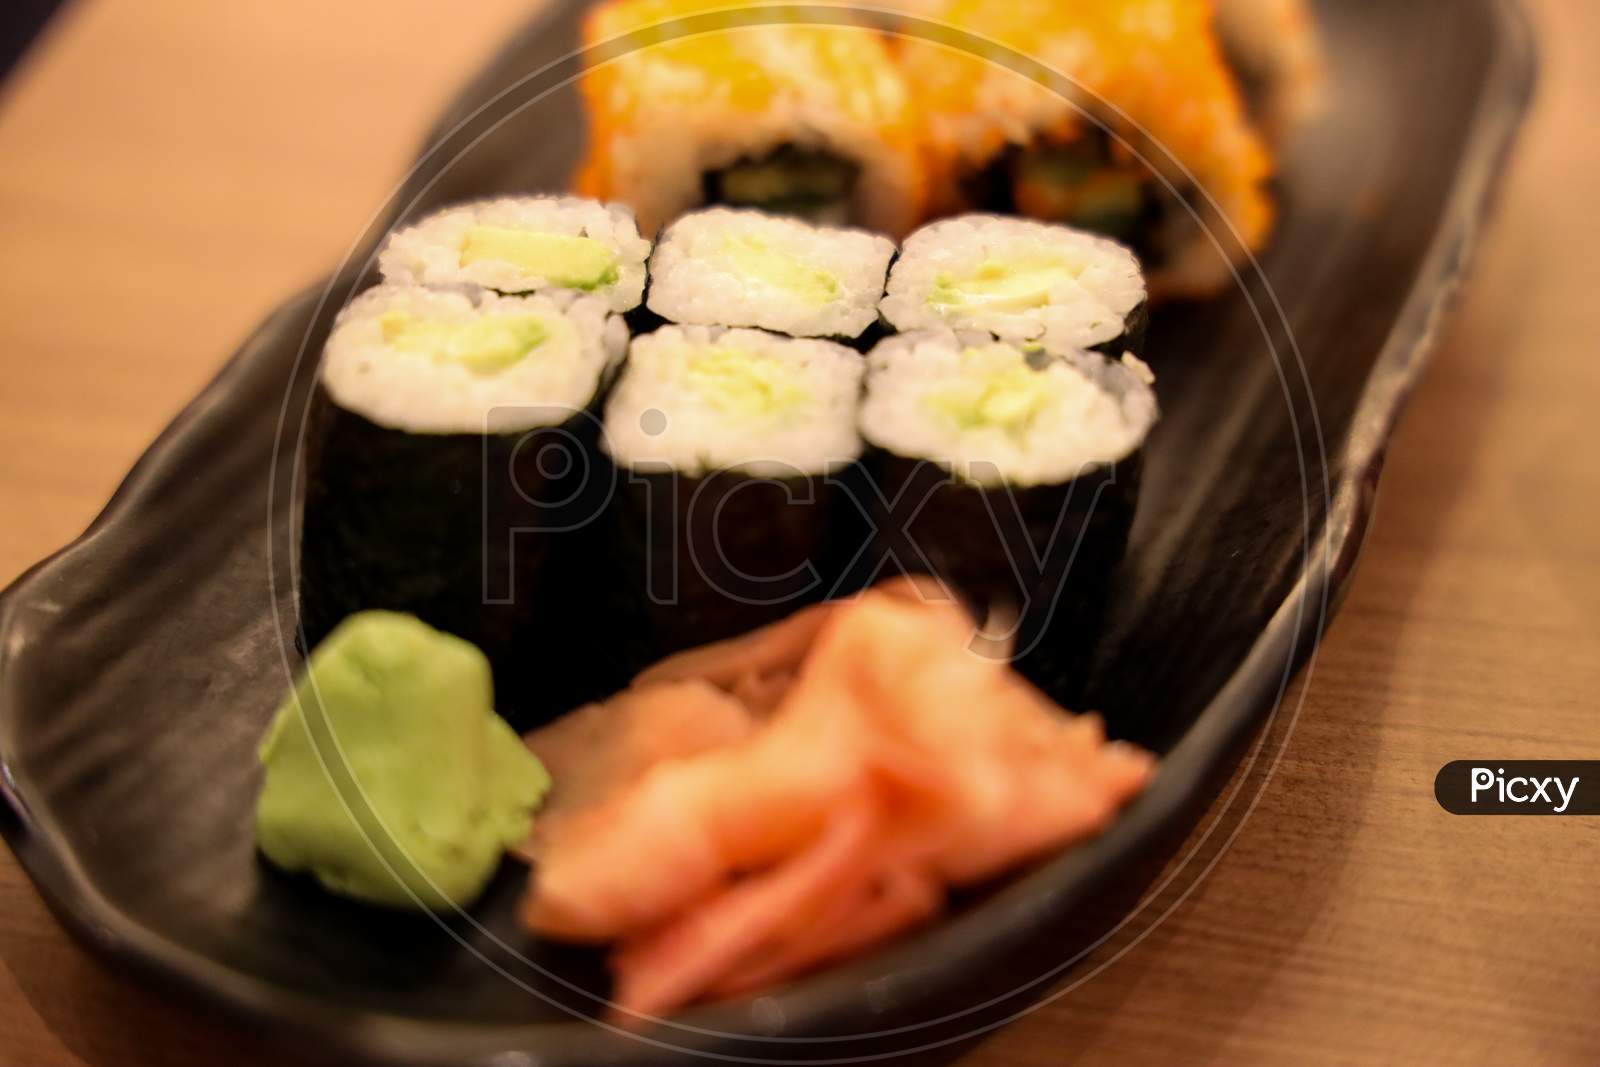 Sushi California Rolls.